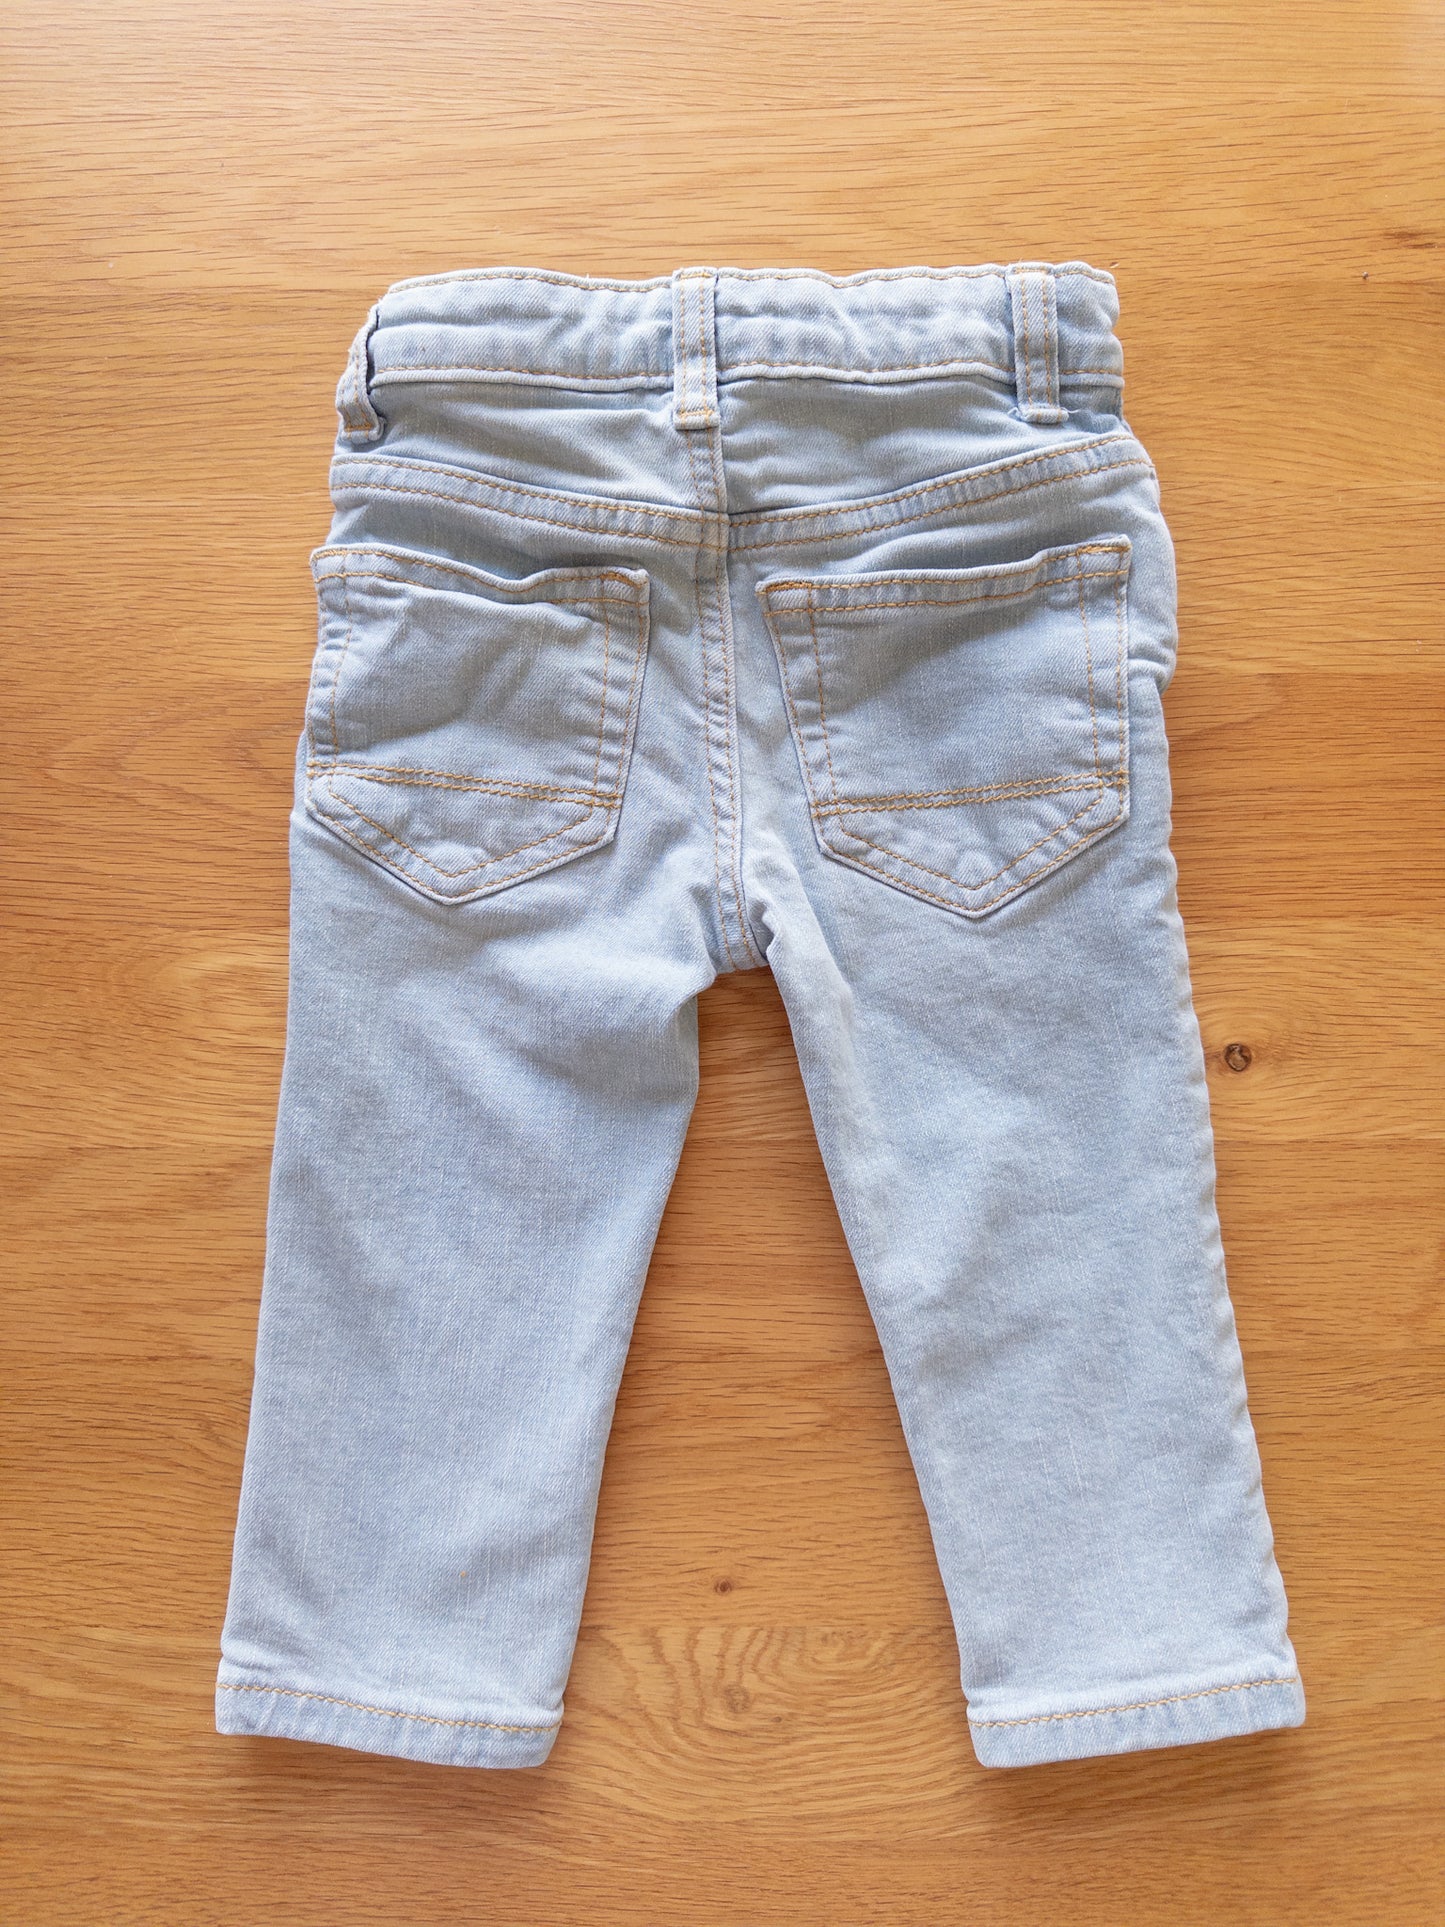 Cat & Jack 18m Light Wash Jeans - EUC